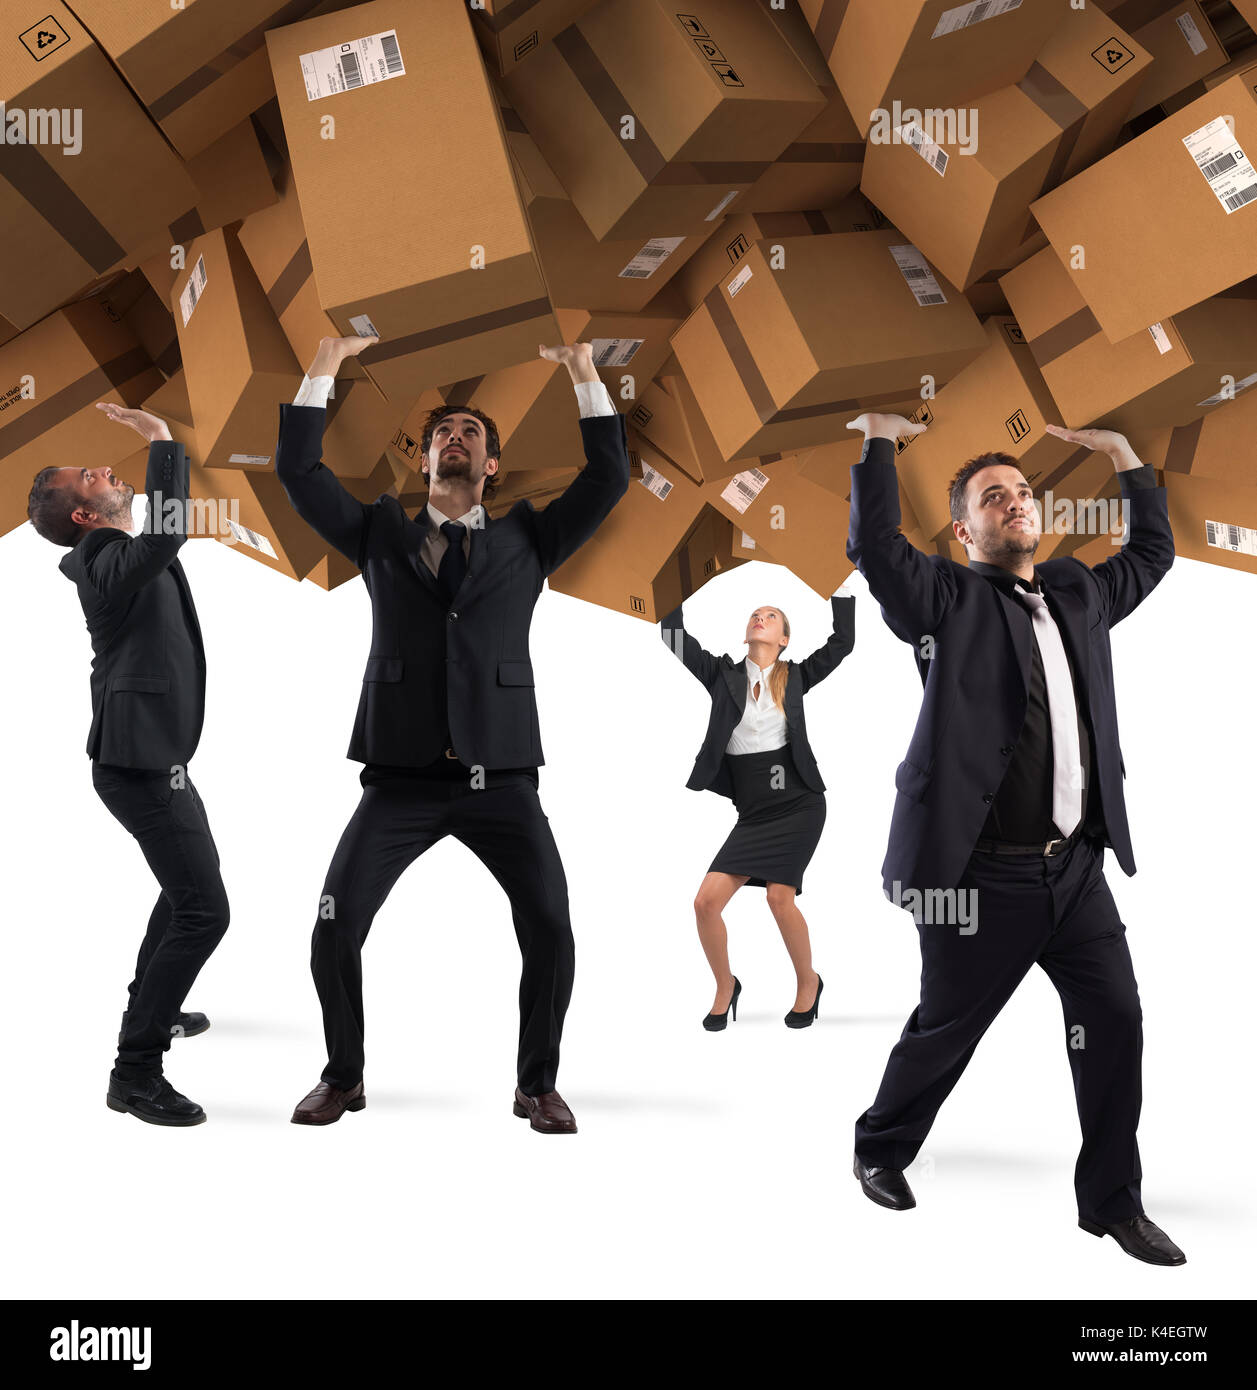 Las personas enterradas por una pila de cajas de cartón. concepto de compras por internet la adicción Foto de stock